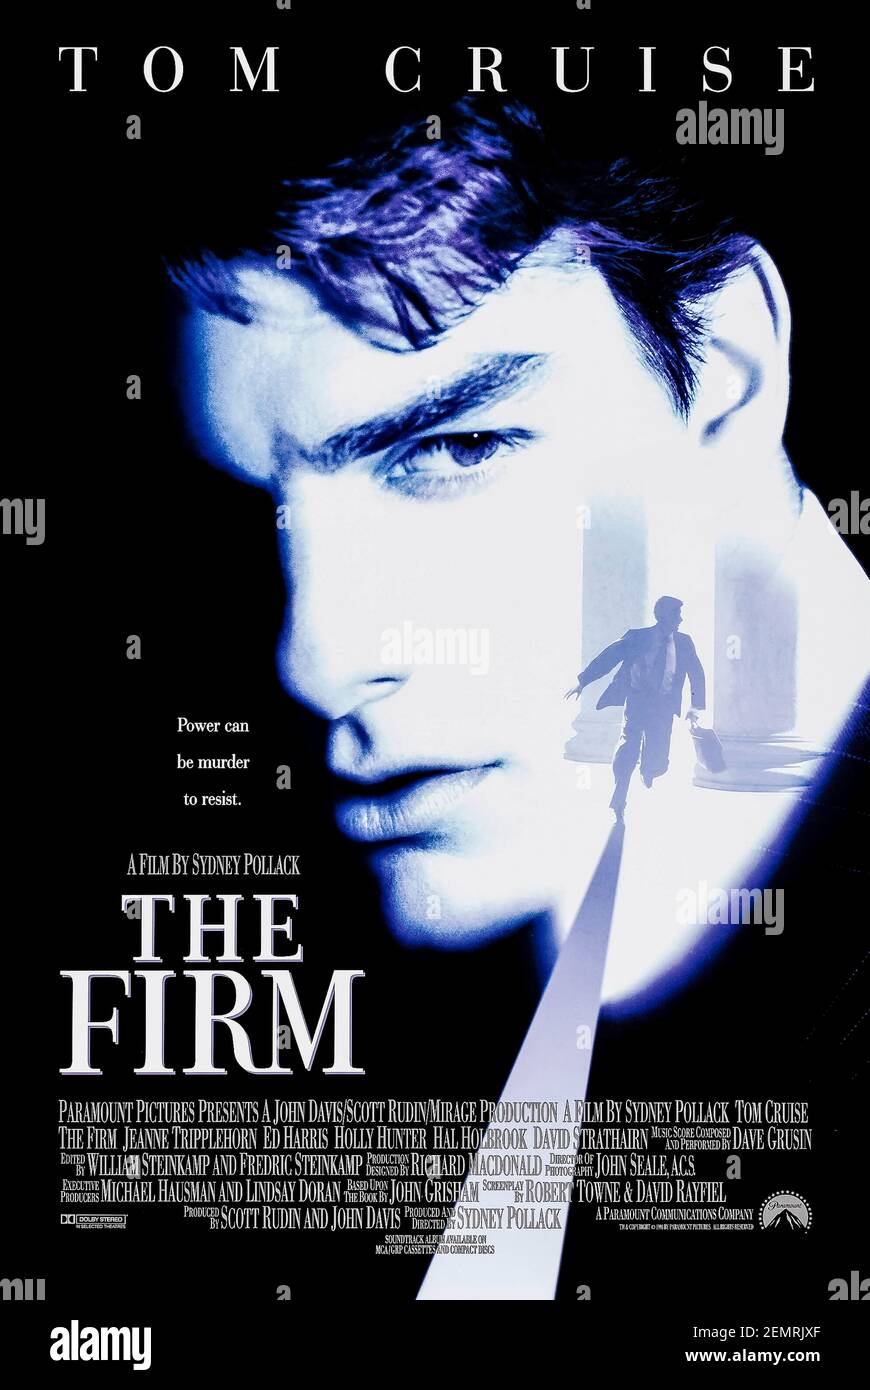 The Firm (1993) unter der Regie von Sydney Pollack mit Tom Cruise, Jeanne Tripplehorn und Gene Hackman. Die großleinwand-Adaption von John Grishams meistverkauftem Roman über einen jungen Anwalt tritt einer renommierten Anwaltskanzlei bei, um zu entdecken, dass sie eine düstere Schattenseite hat. Stockfoto